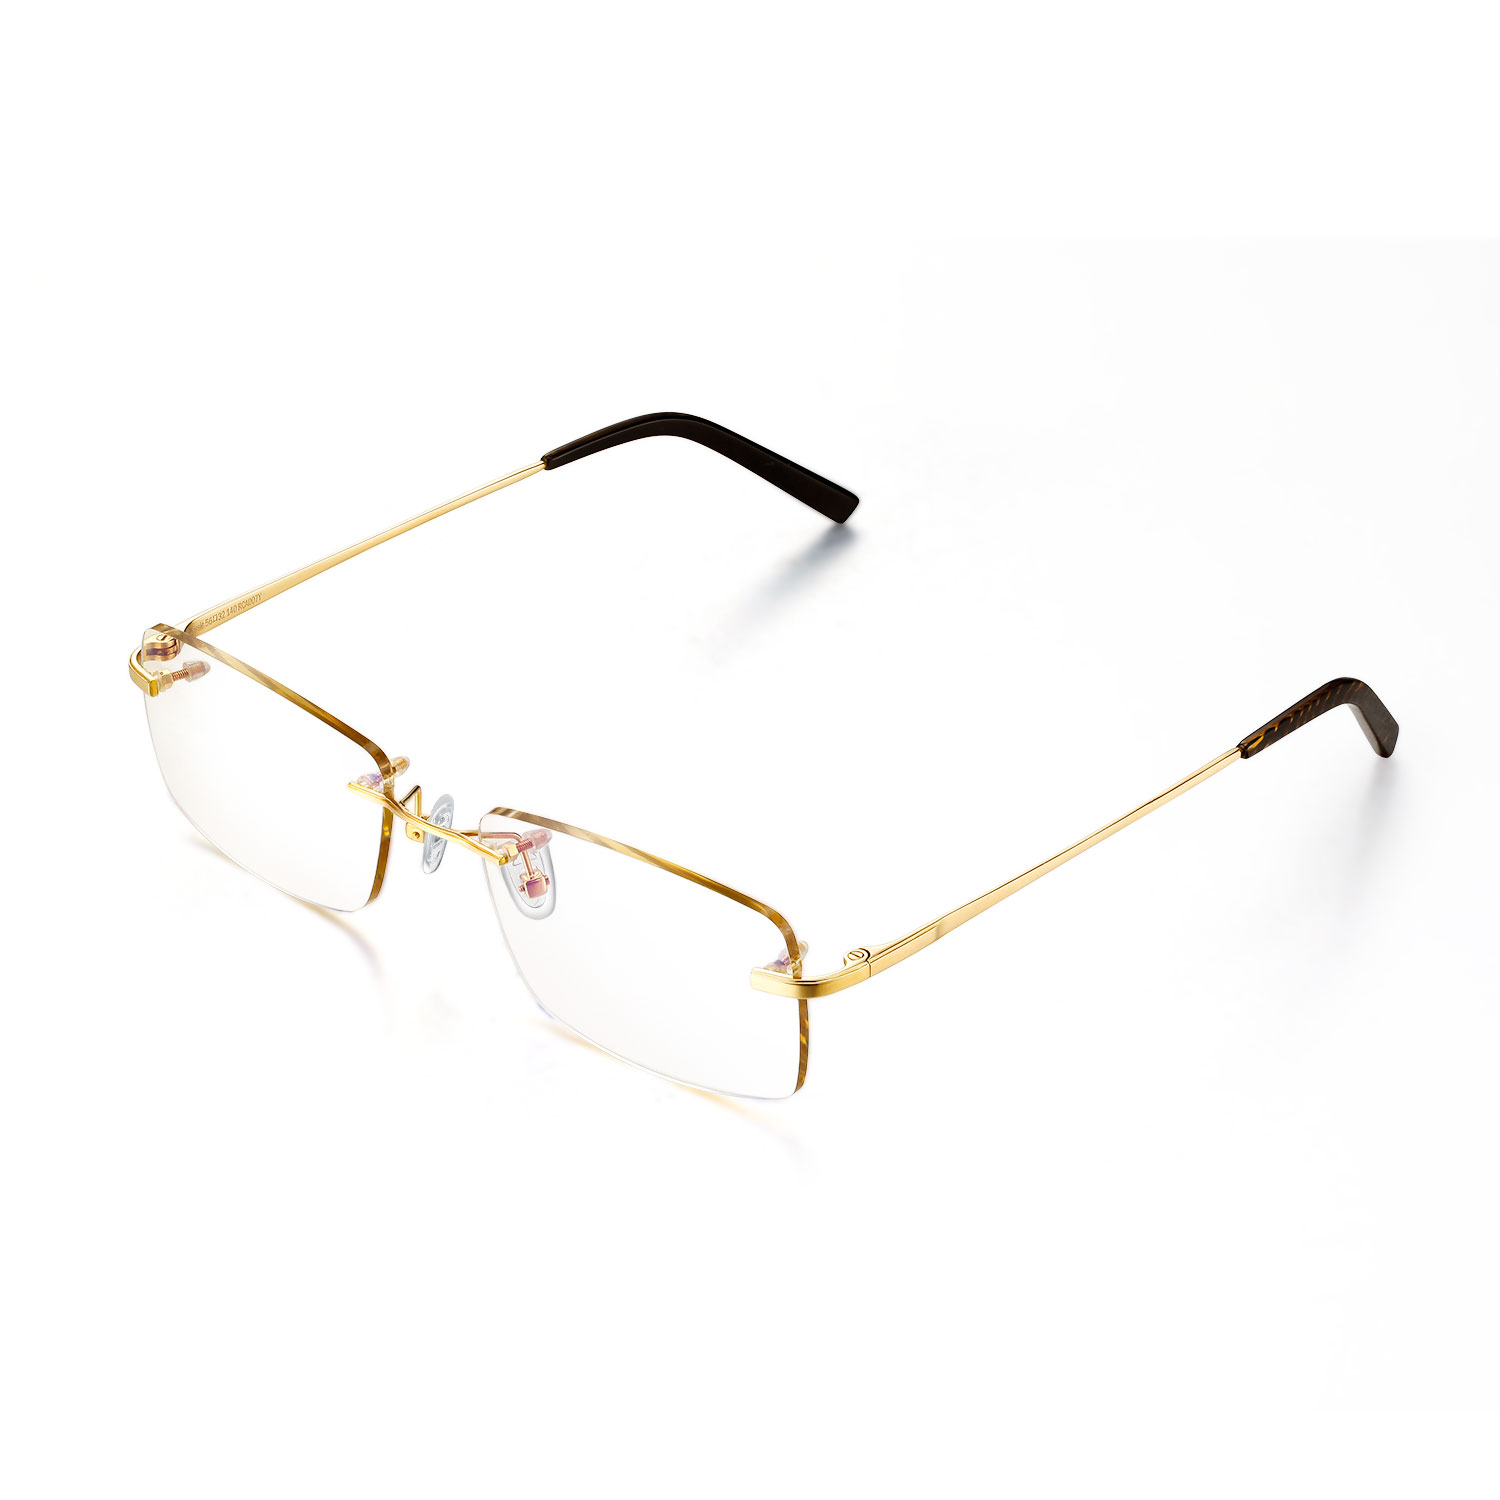 厂家直销 时尚简约 保色金银色铜珠眼镜鏈 链条眼镜链口罩链双用-阿里巴巴